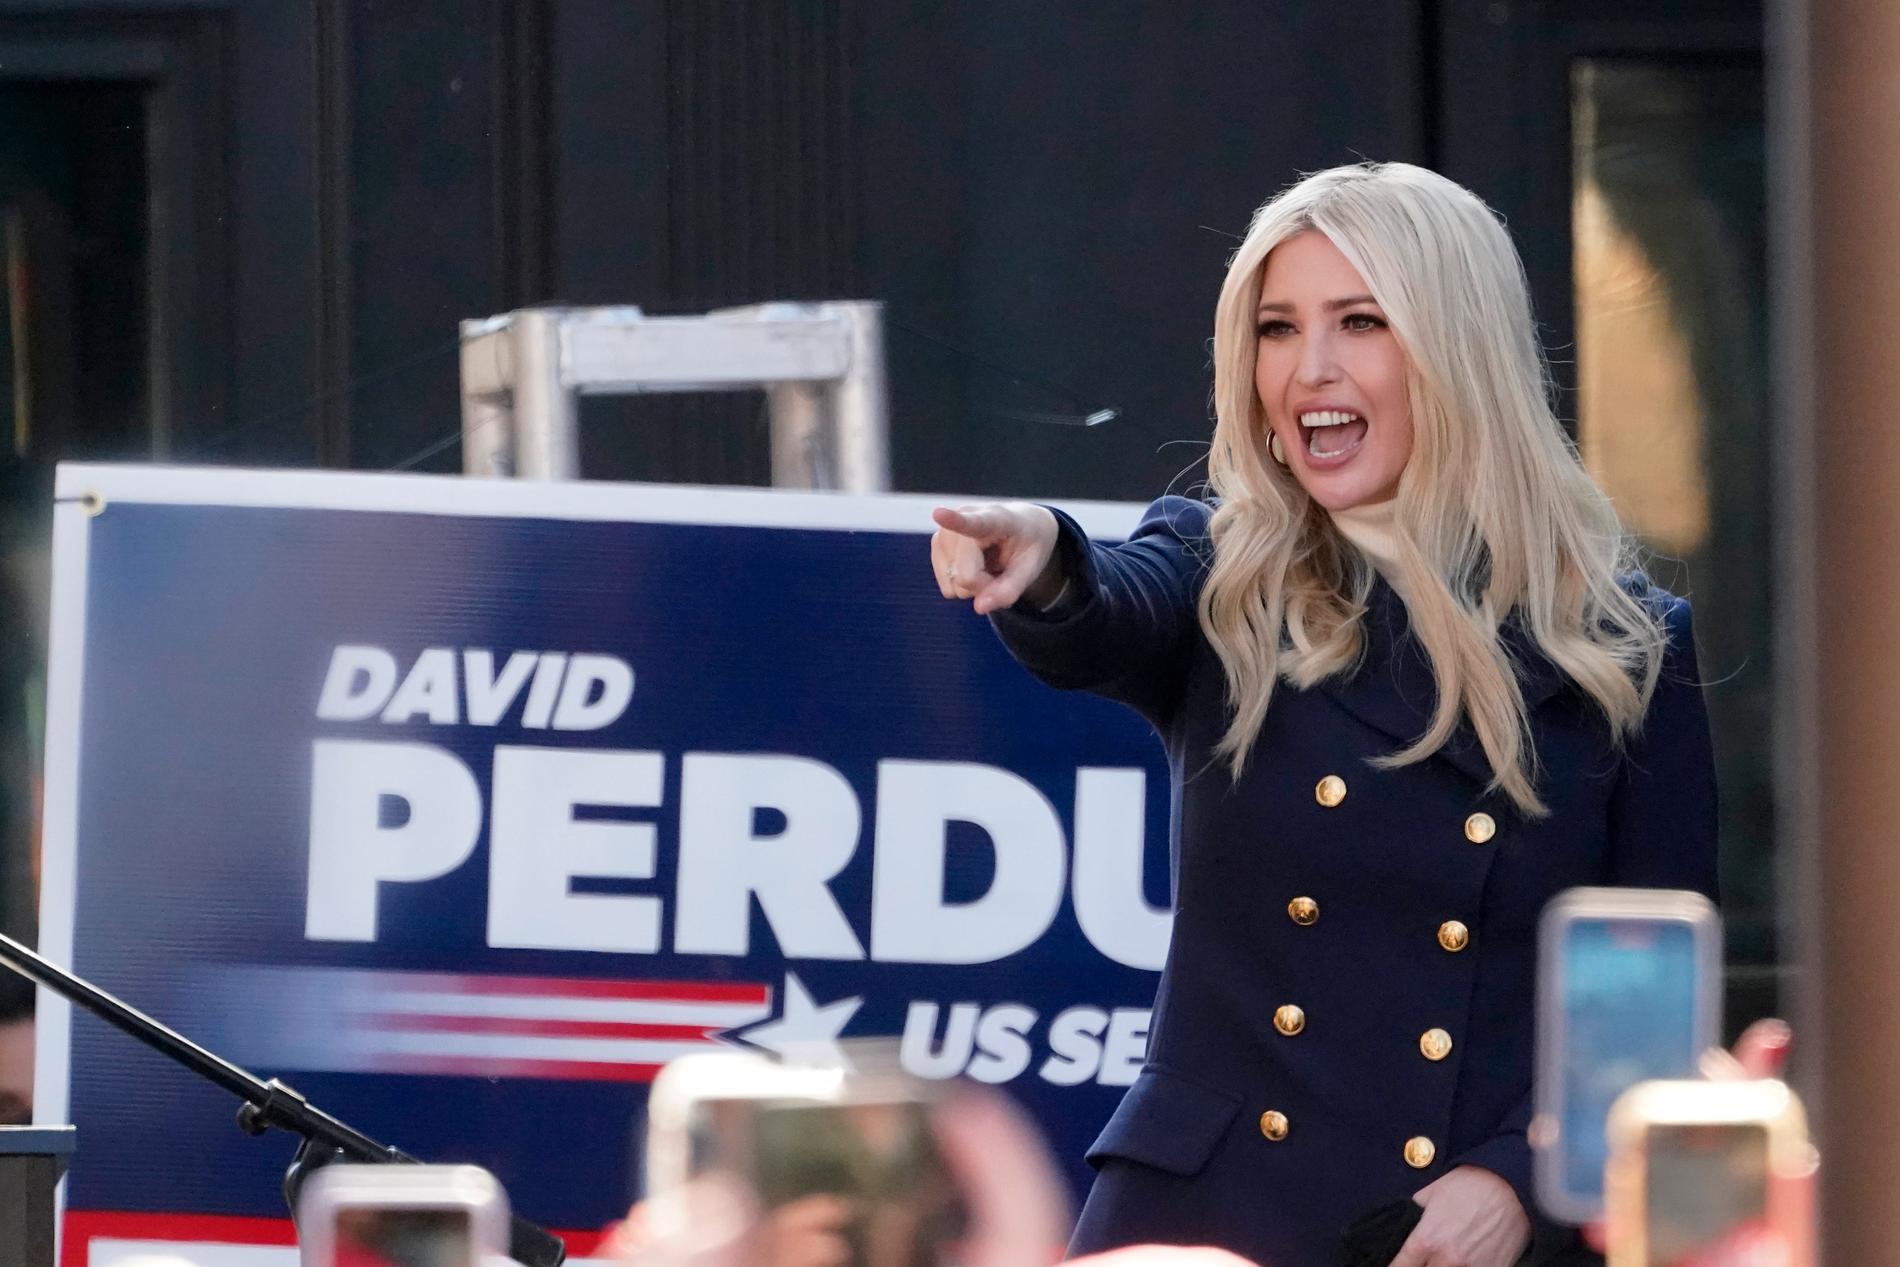 President Donald Trumps dotter Ivanka Trump kampanjar för de republikanska senatorerna Kelly Loeffler och David Perdue i Georgia.